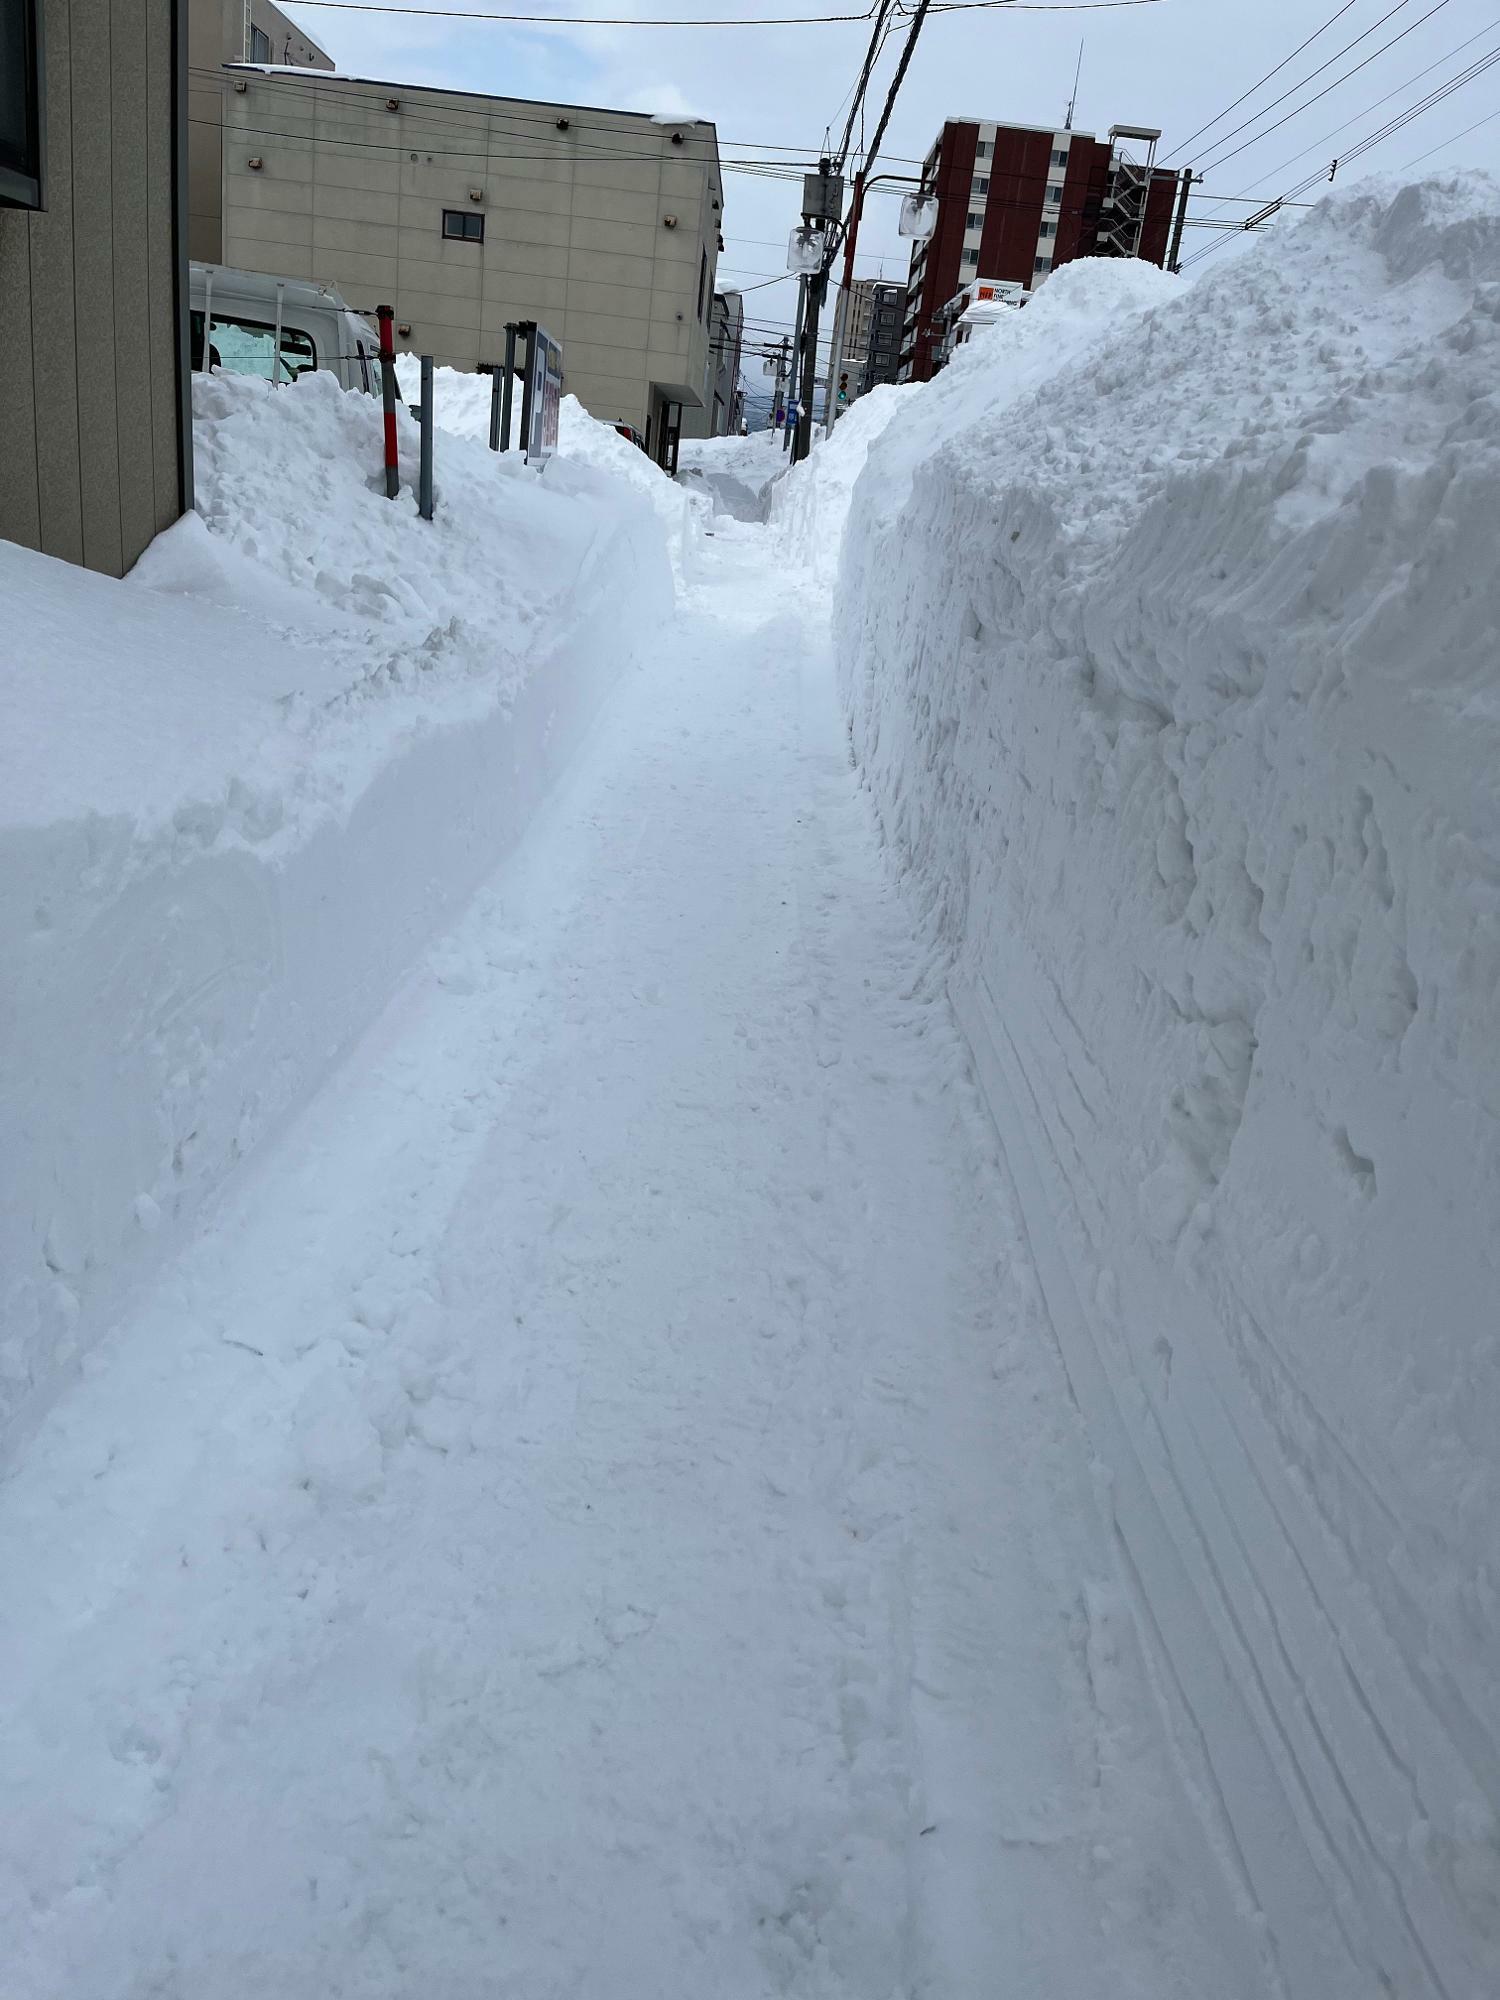 つい最近の東区。やっと歩道に除雪が入って人が歩けるようになりました